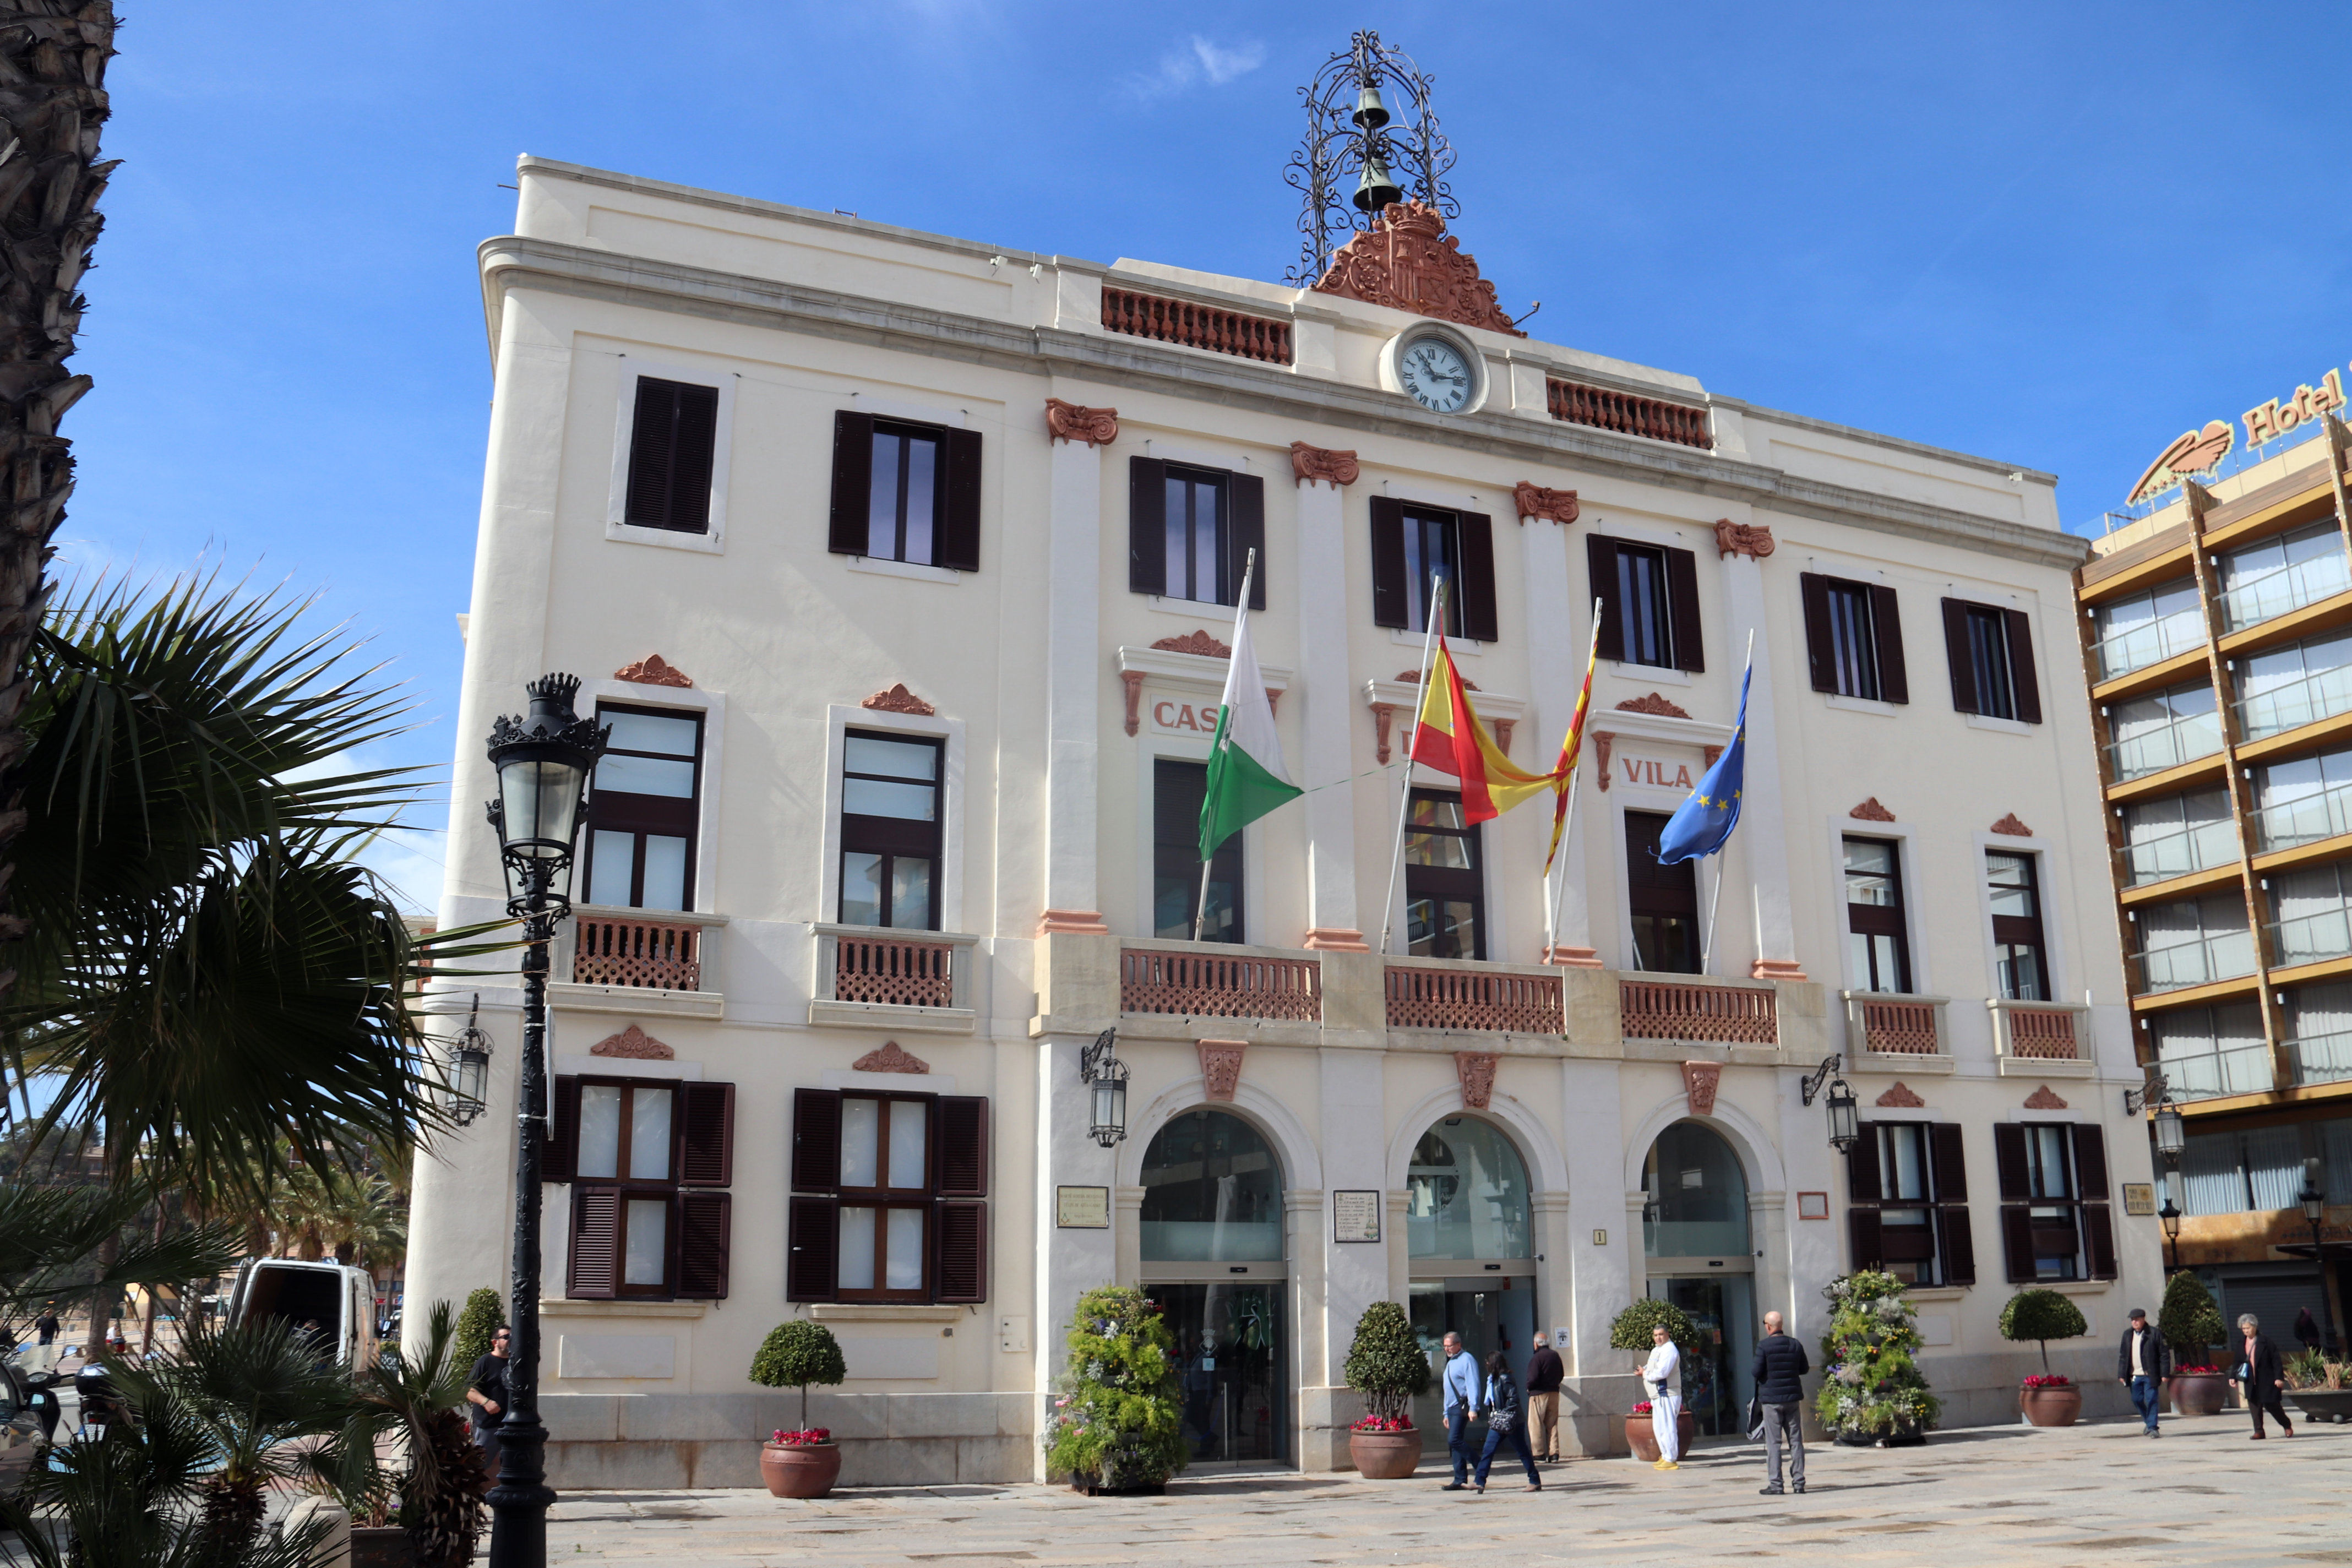 Lloret de Mar city hall